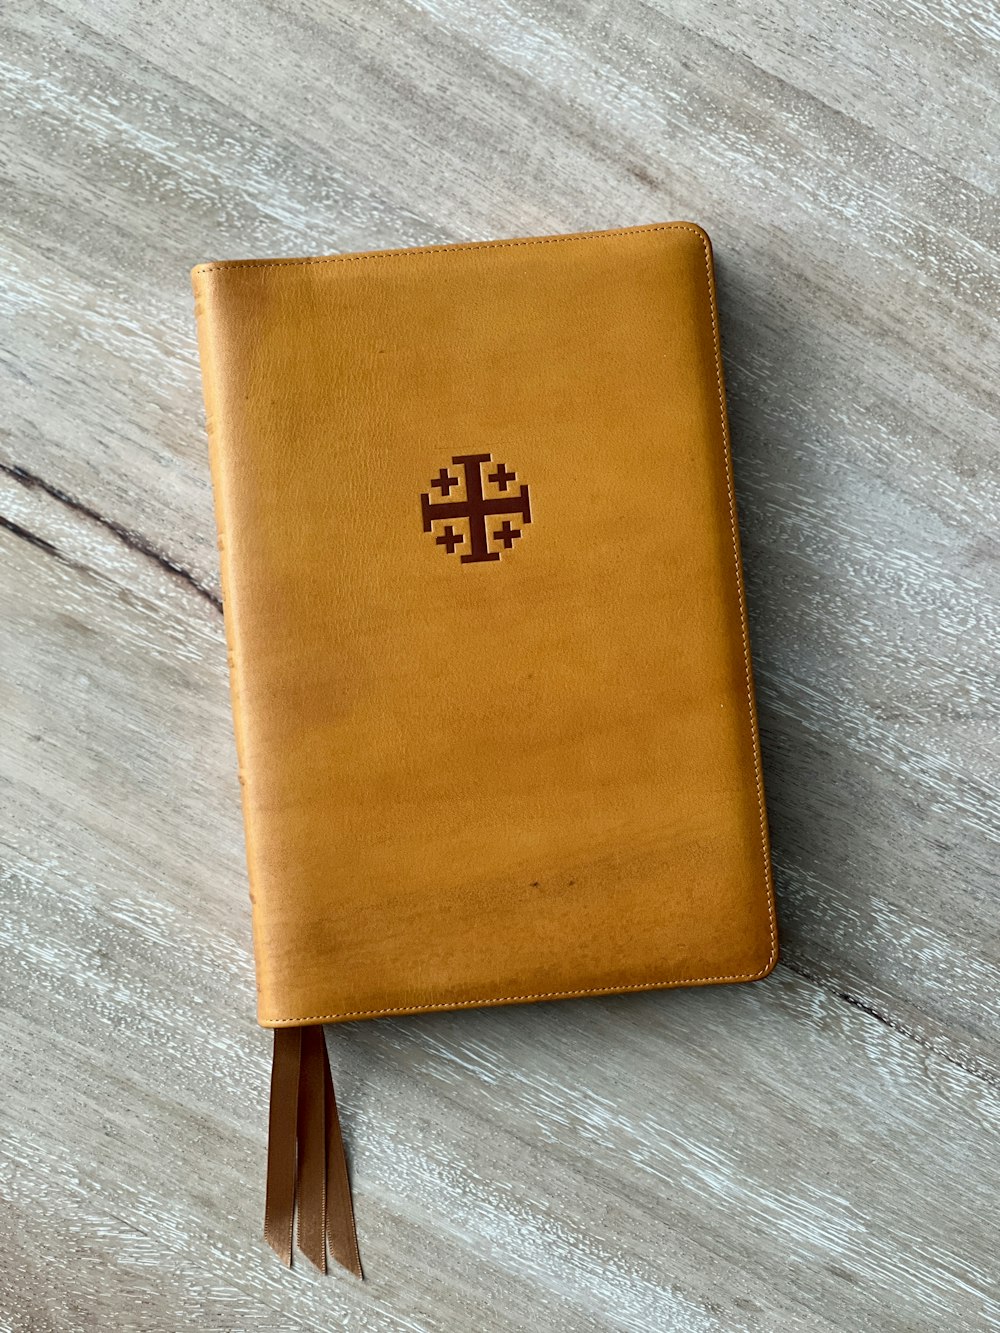 un diario di pelle marrone con una croce su di esso